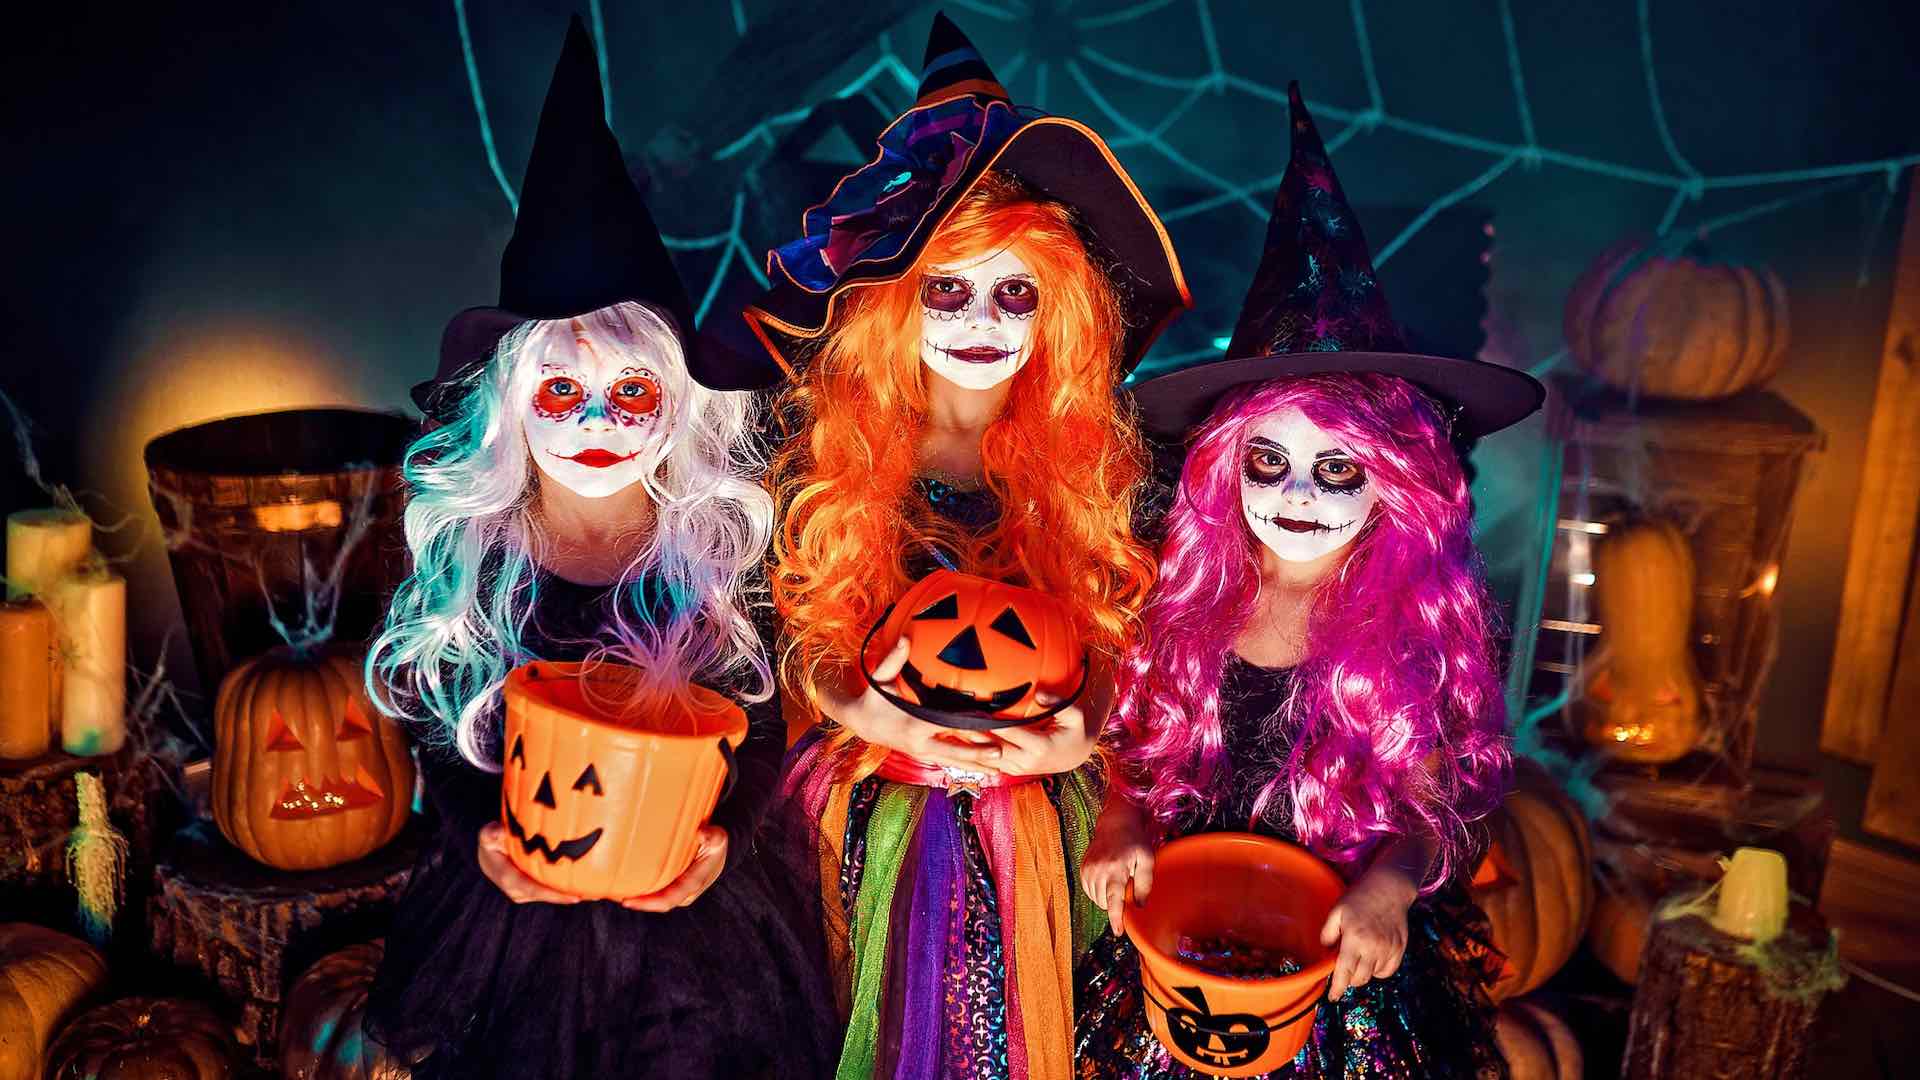 Halloween, 10,6 milliards de dollars, révèle le bilan environnemental des célébrations effrayantes américaines